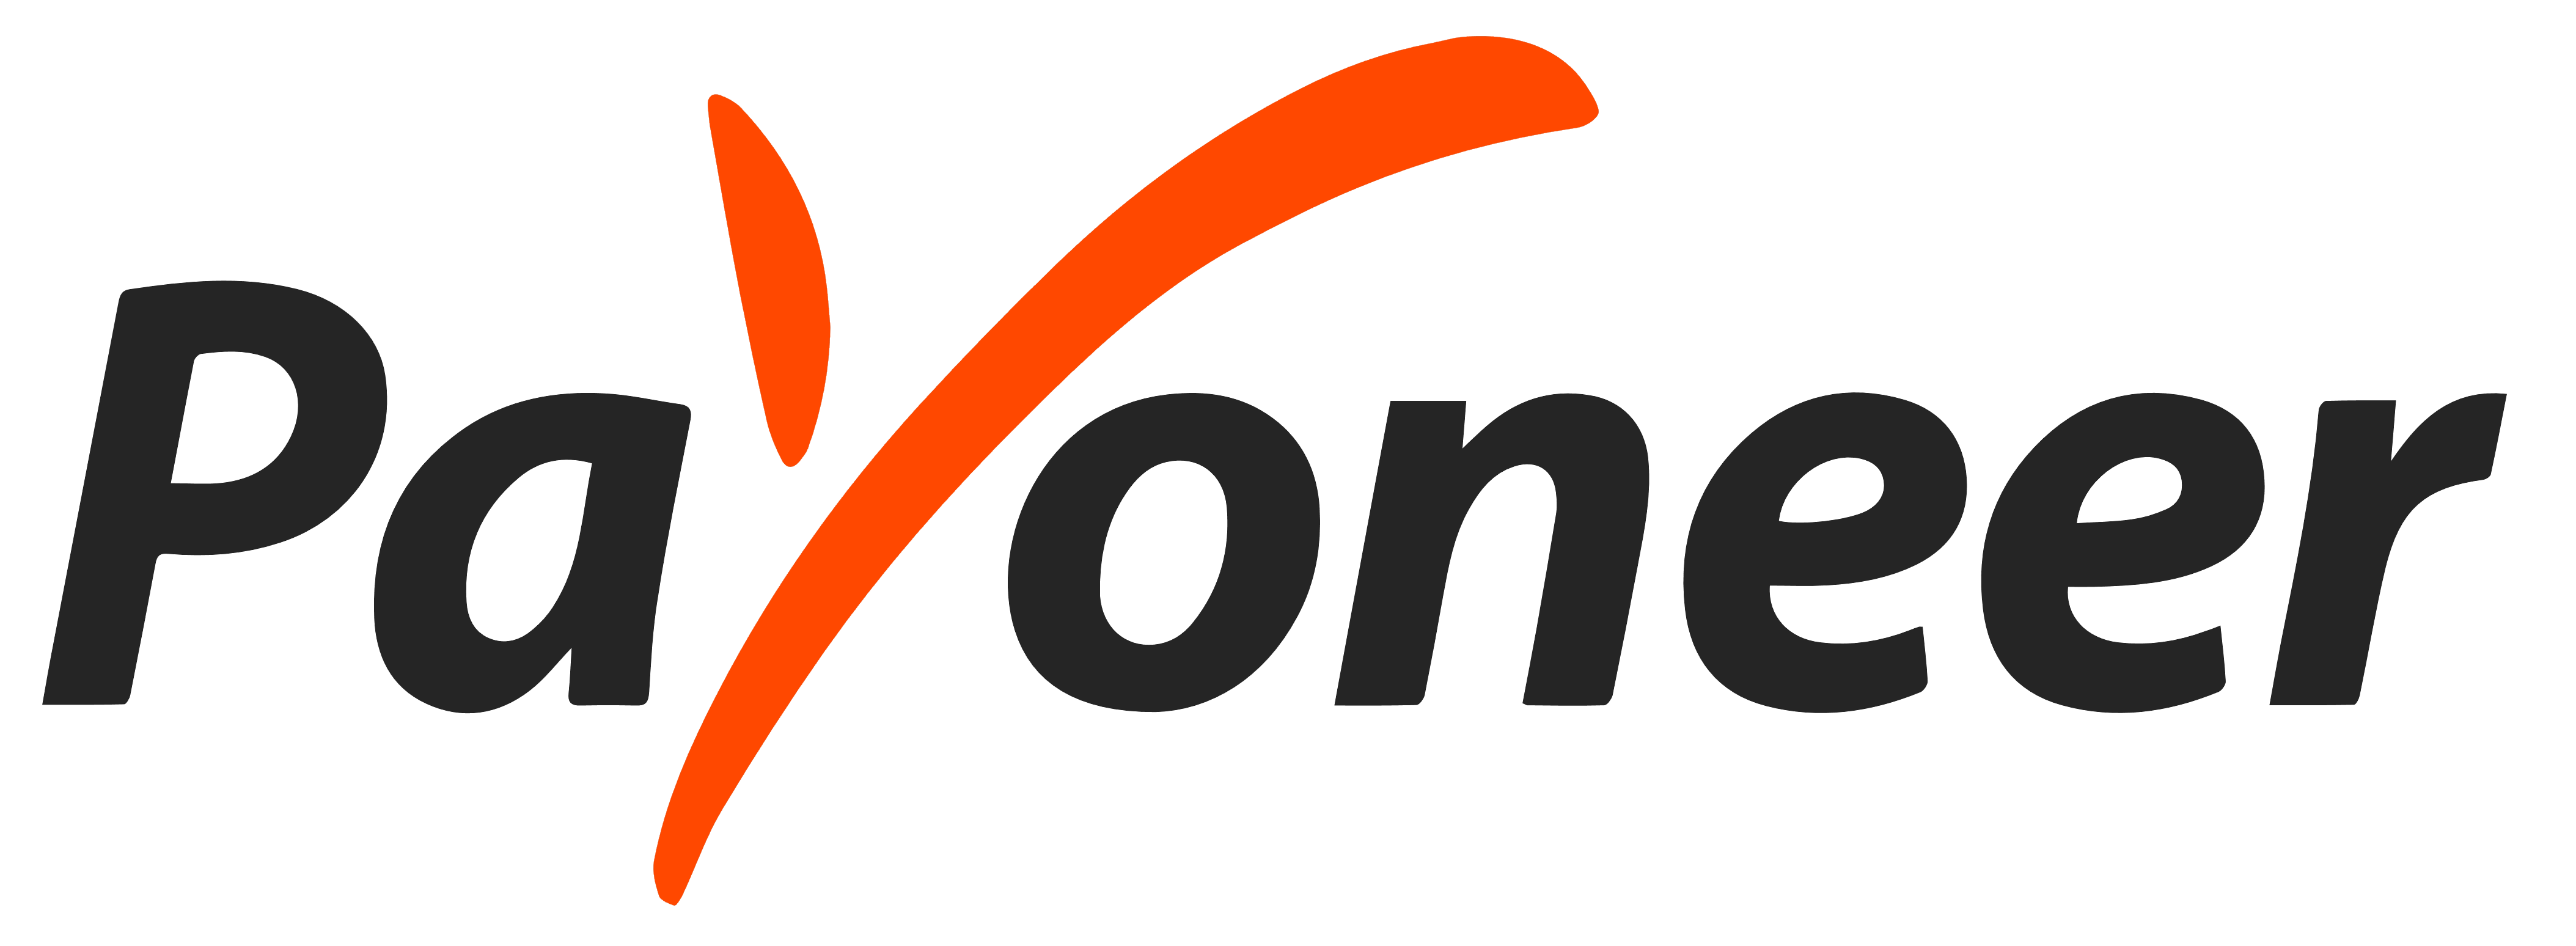 Payoneer logo free icon